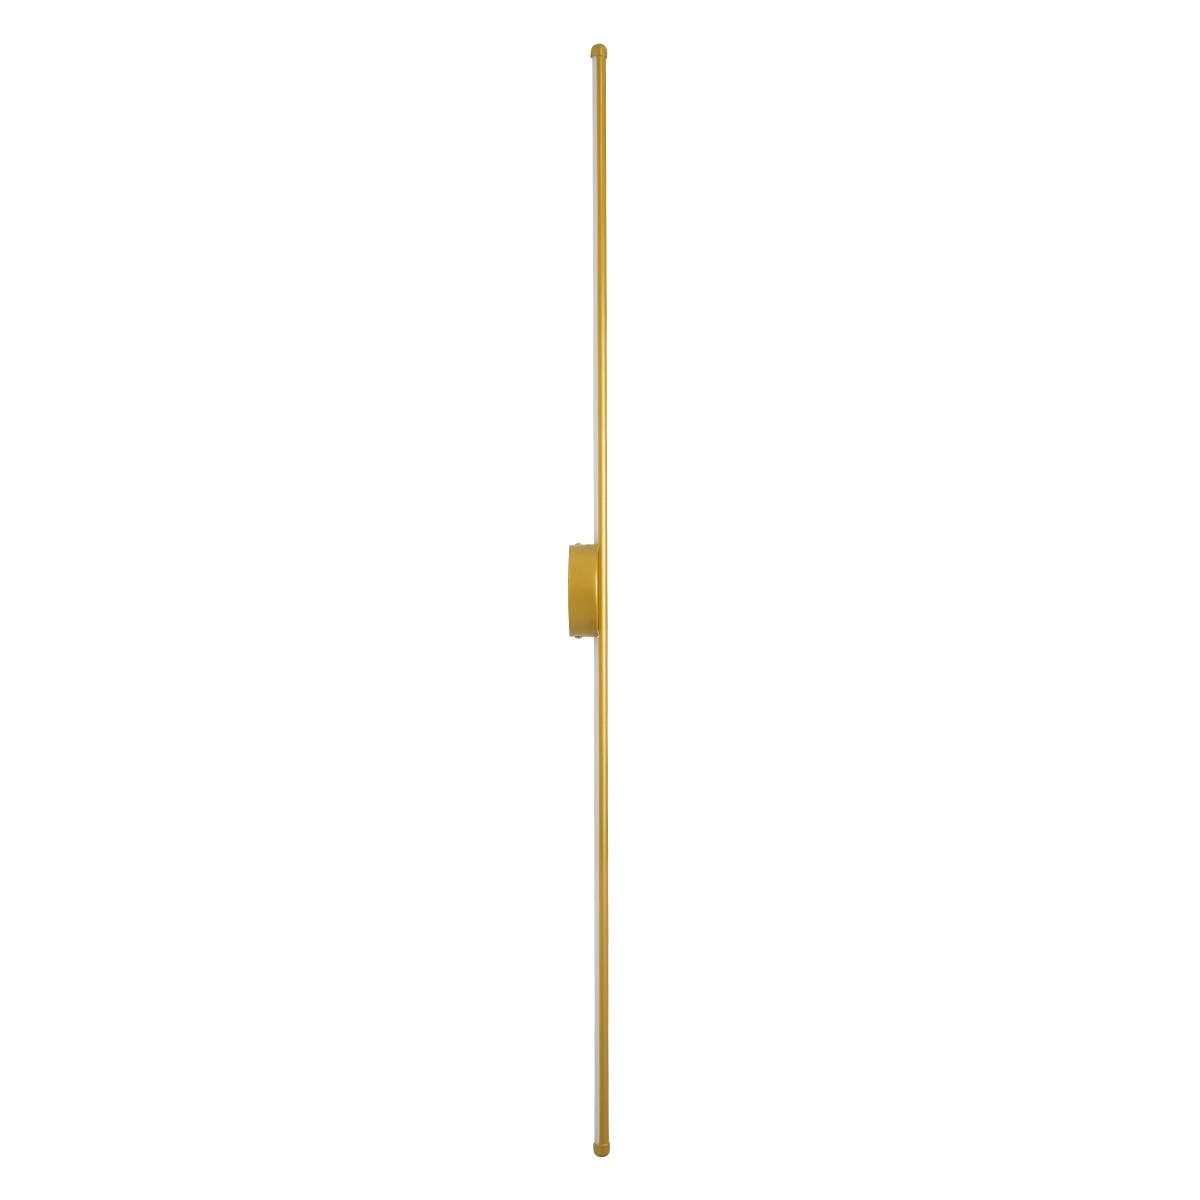 Led Γραμμικό Φωτιστικό Τοίχου - Απλίκα DIADEM 18Watt Χρυσό με Εναλλαγή Φωτισμού Μ10 x Π4 x Υ120cm 61334